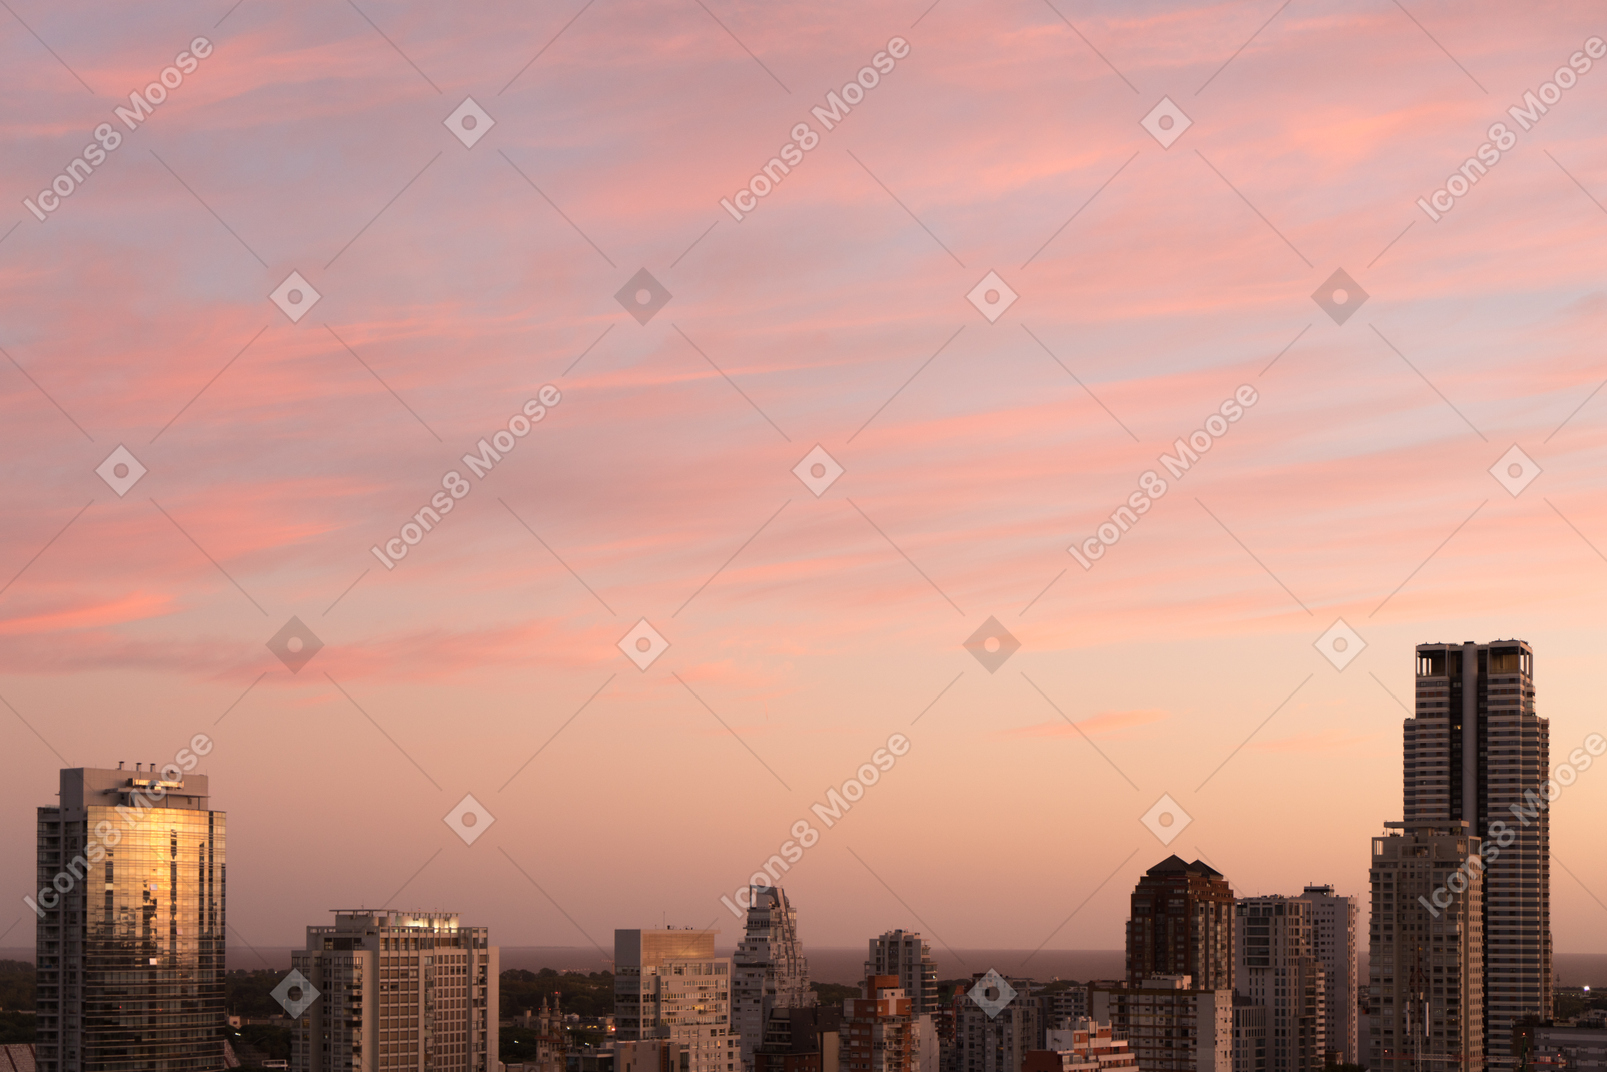 A vista da cidade ao amanhecer rosa